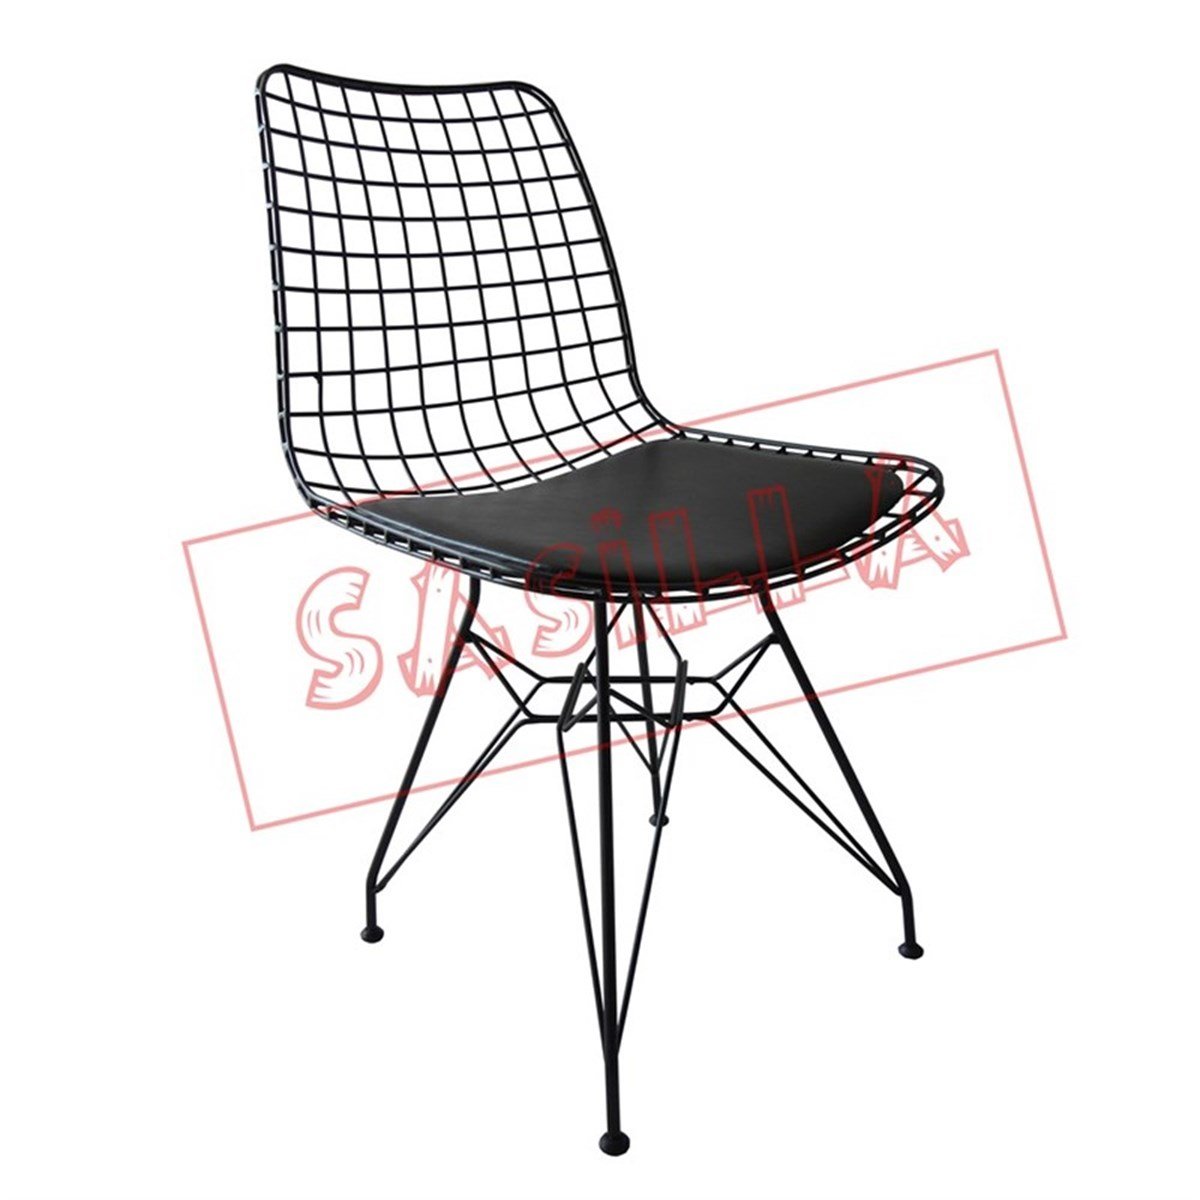 Cage Metal Tel Sandalye - Sadece 259 TL ye Tel Sandalye - Tel Sandalye  Üreticiden Direk Satış